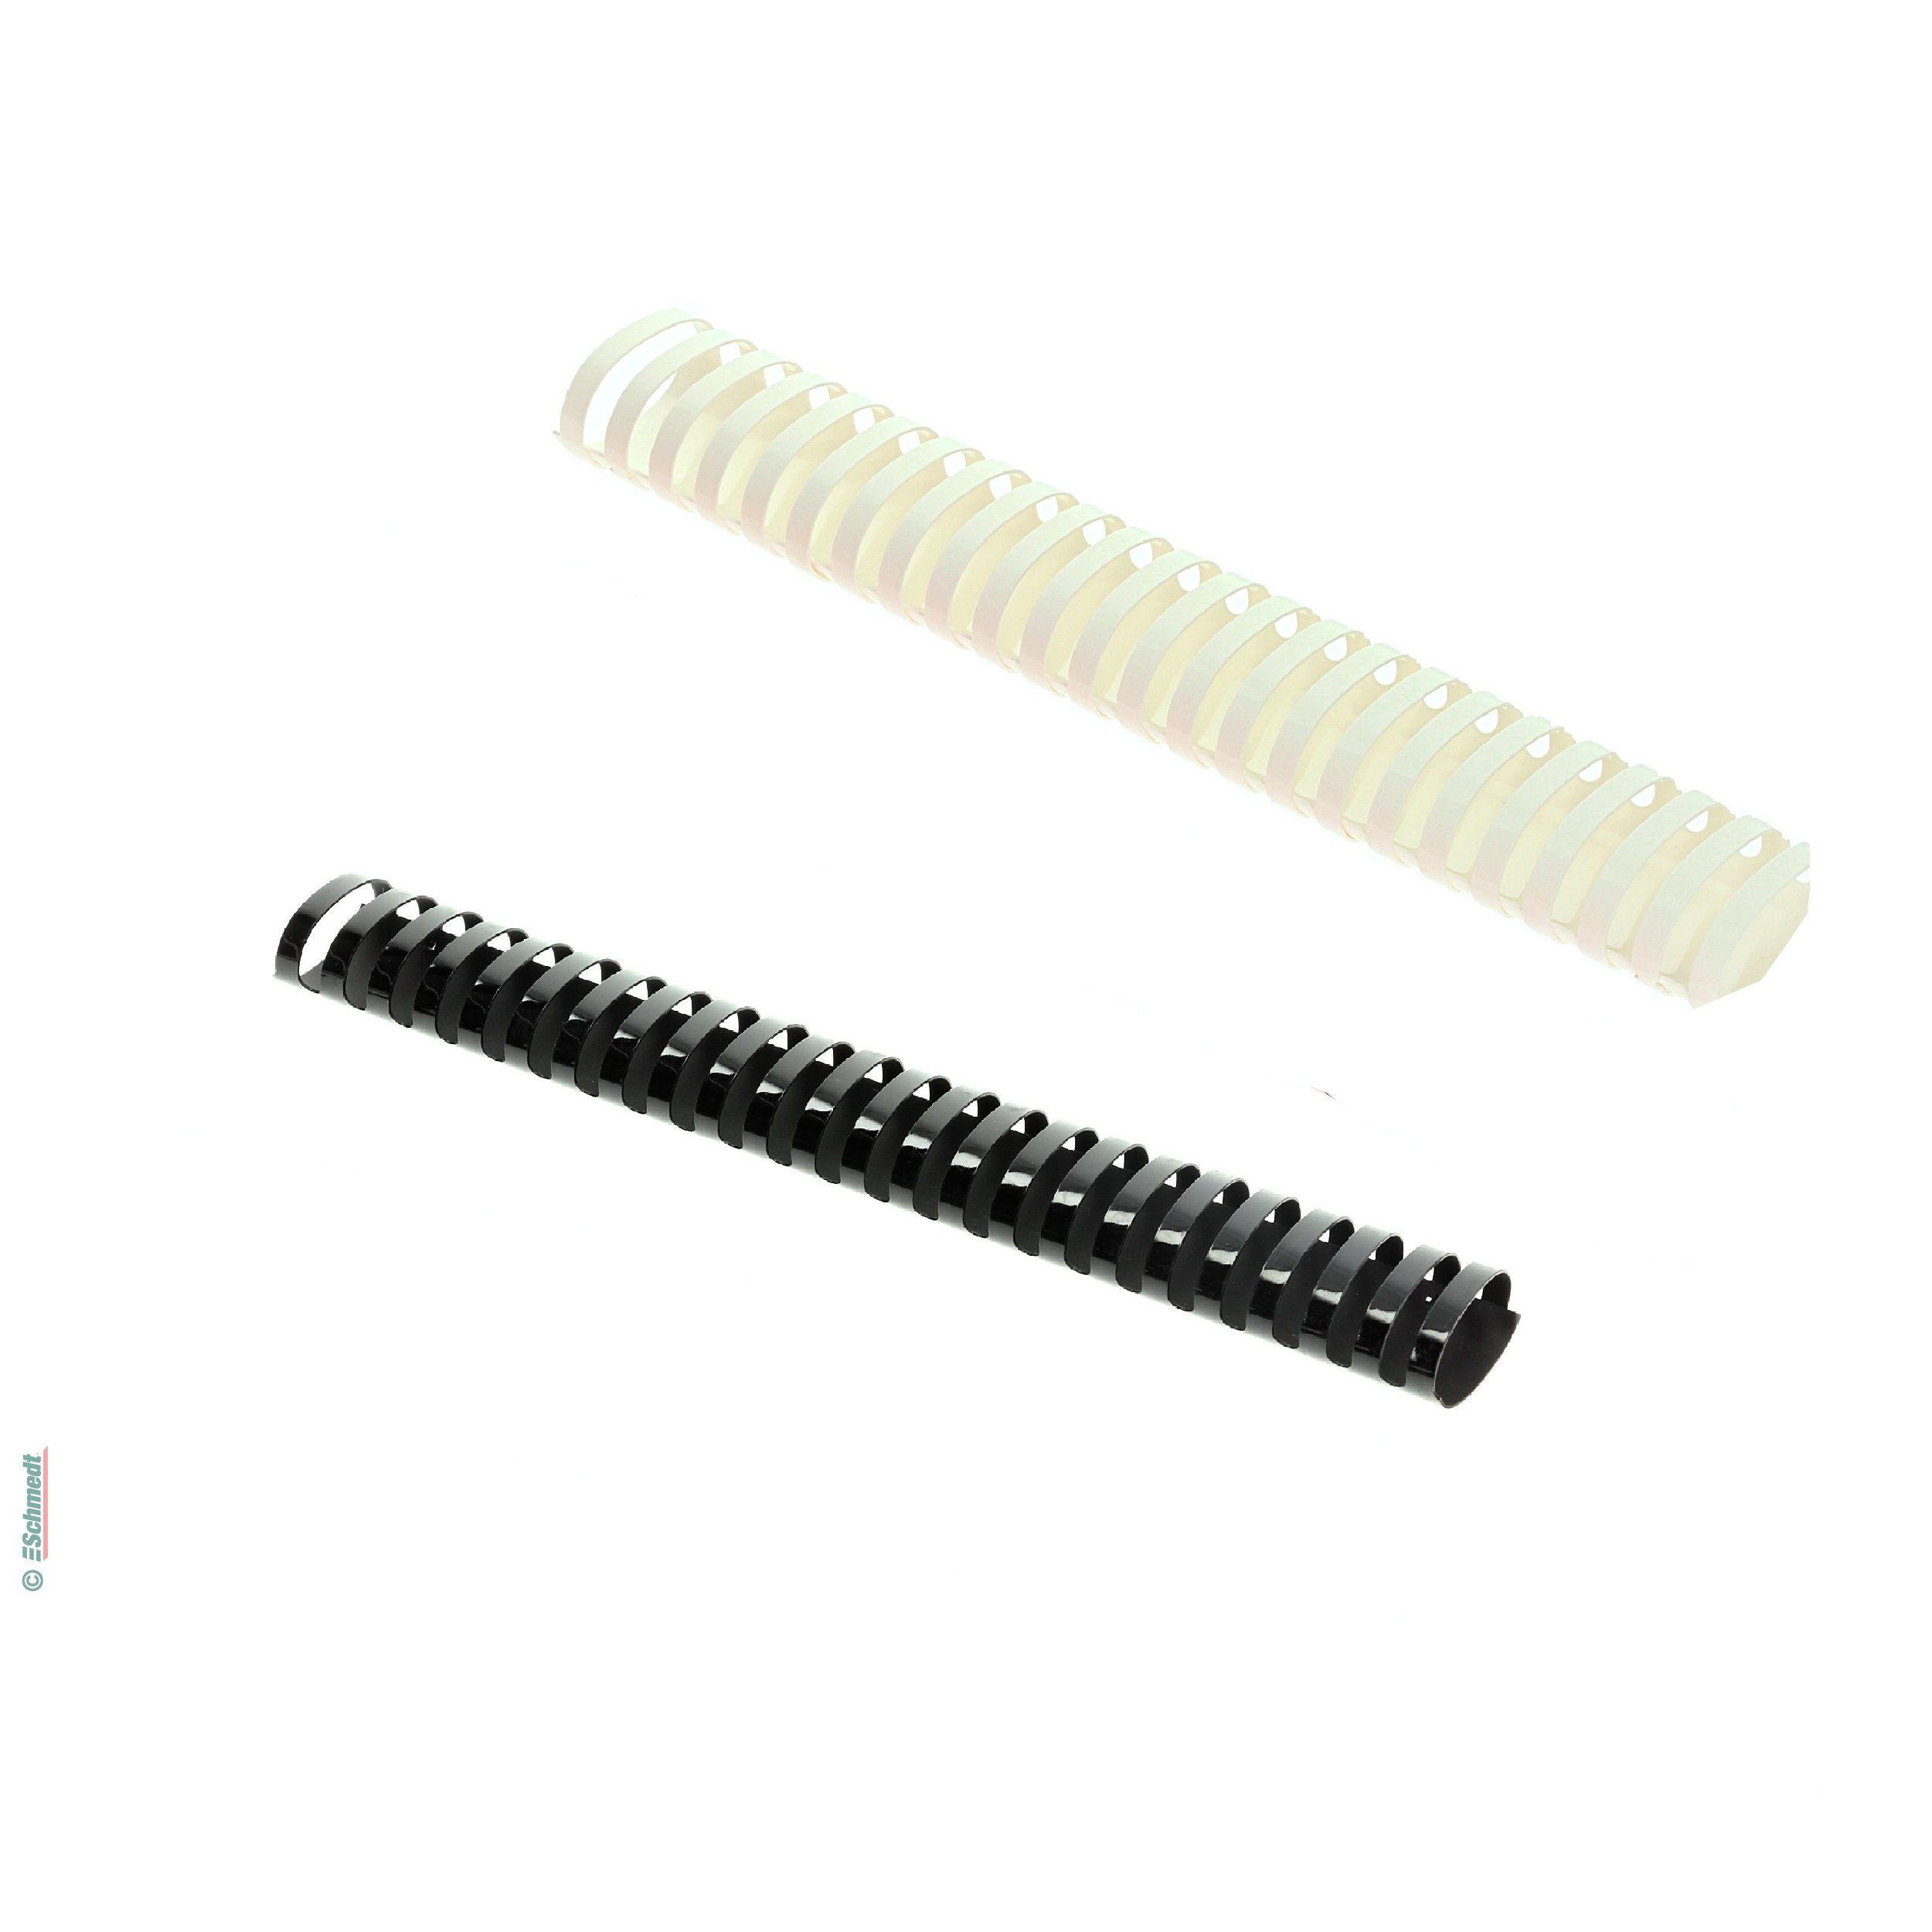 Canutillos de plástico - ovalado - Paso EUROP - 24 anillas - para DIN A4 - Aplicación: para el procesamiento en encuadernadoras de canutillo...